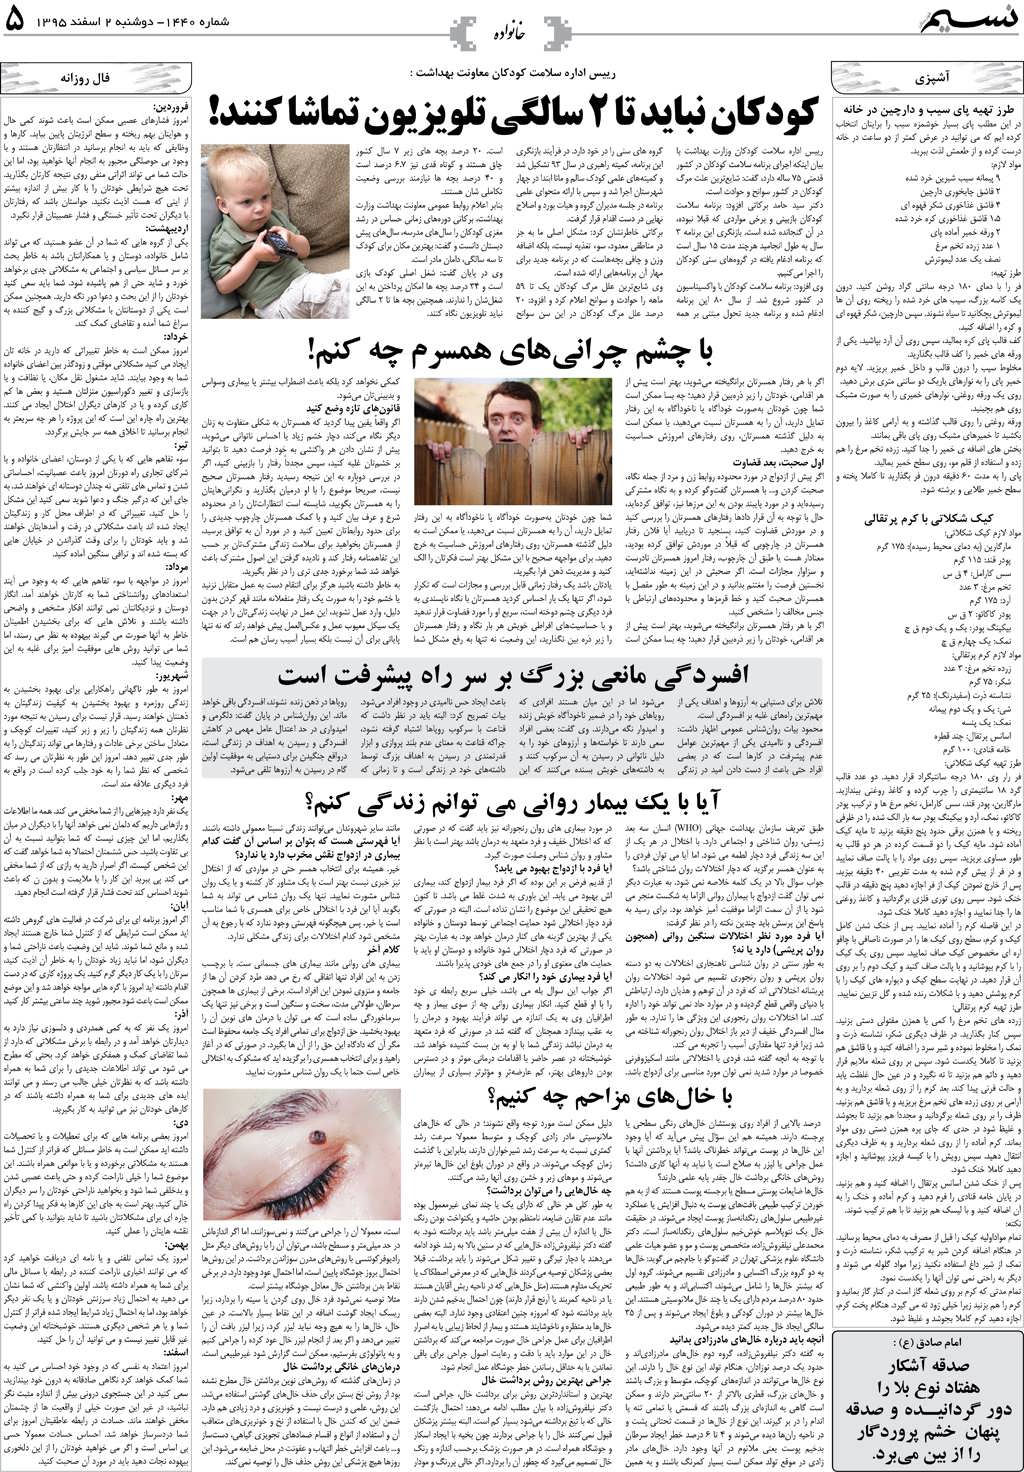 صفحه خانواده روزنامه نسیم شماره 1440